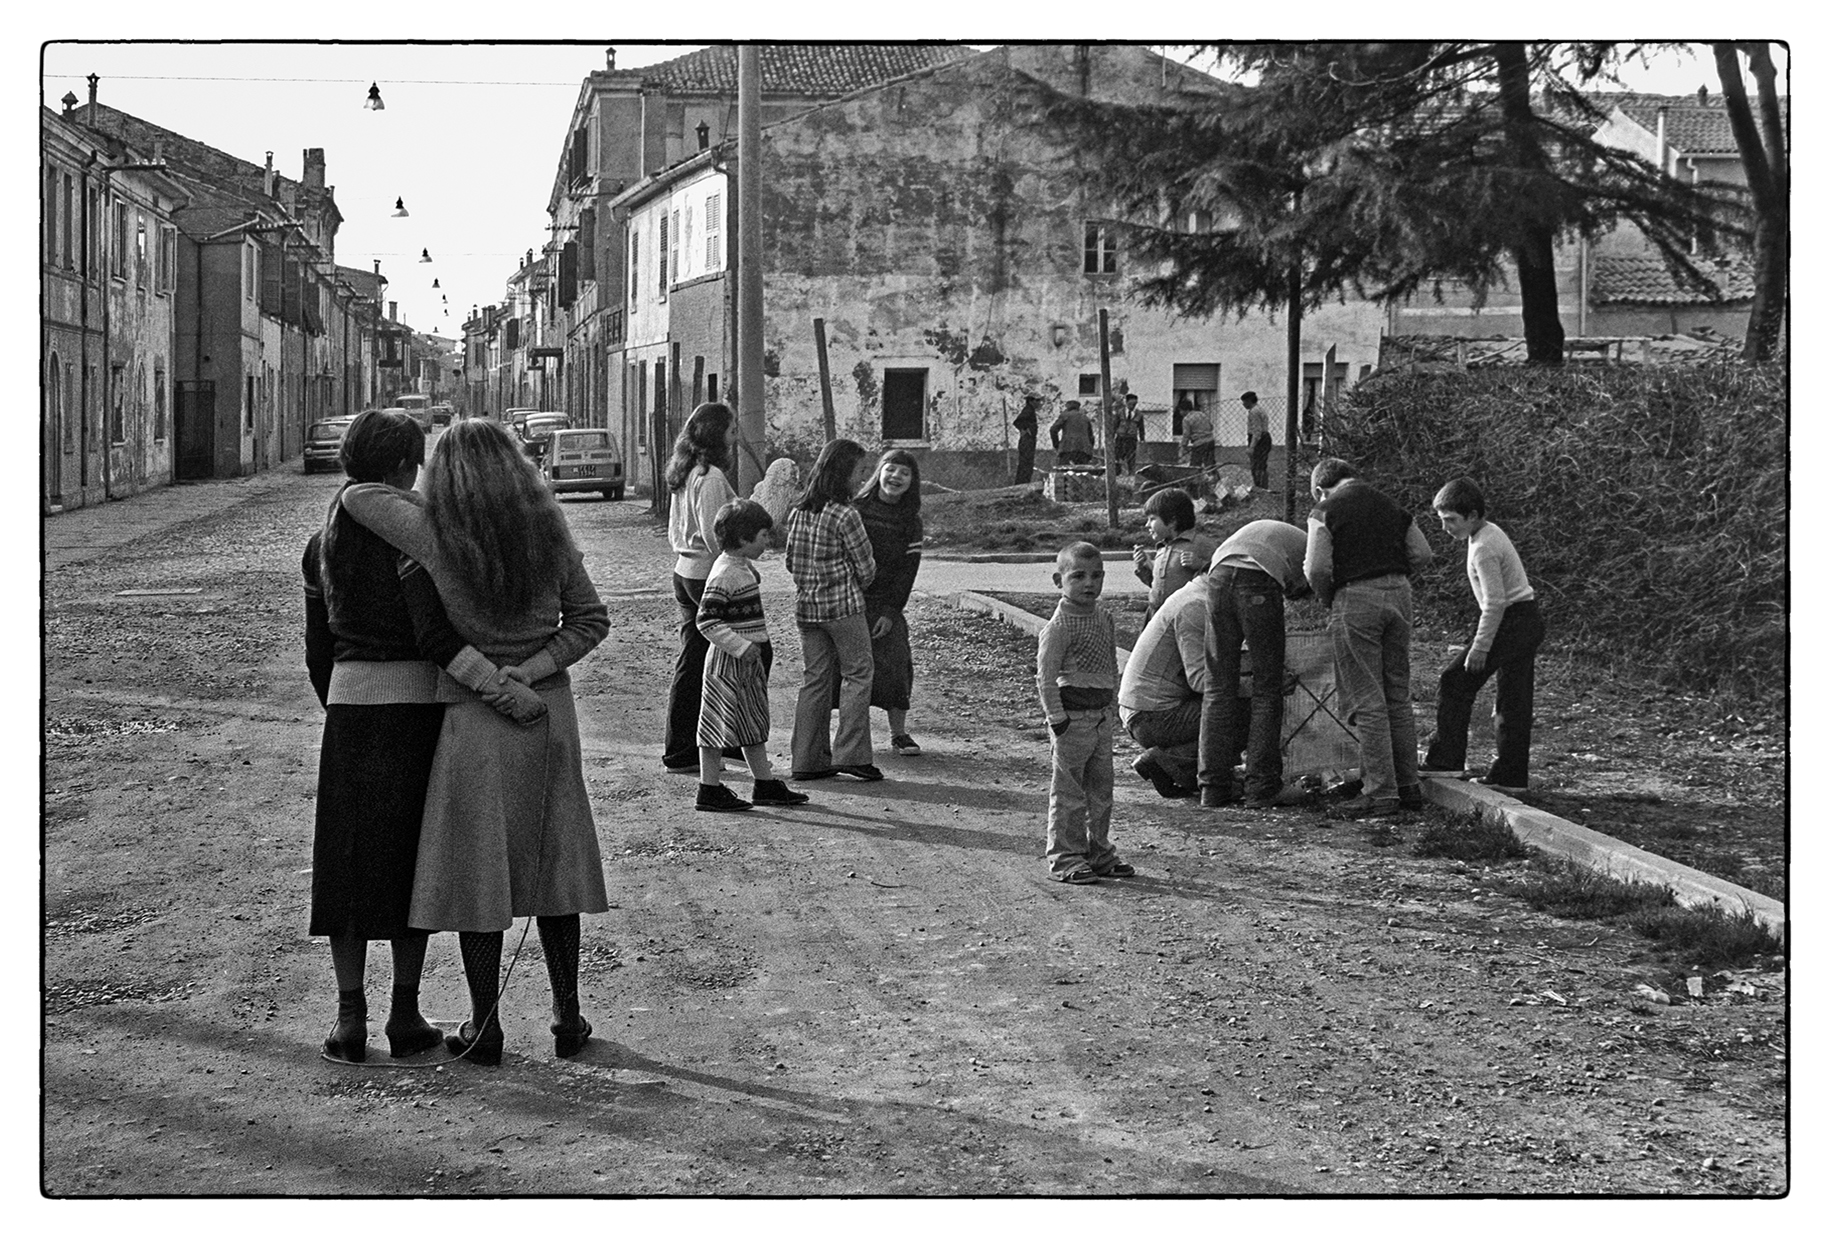 Comacchio, 1970s...